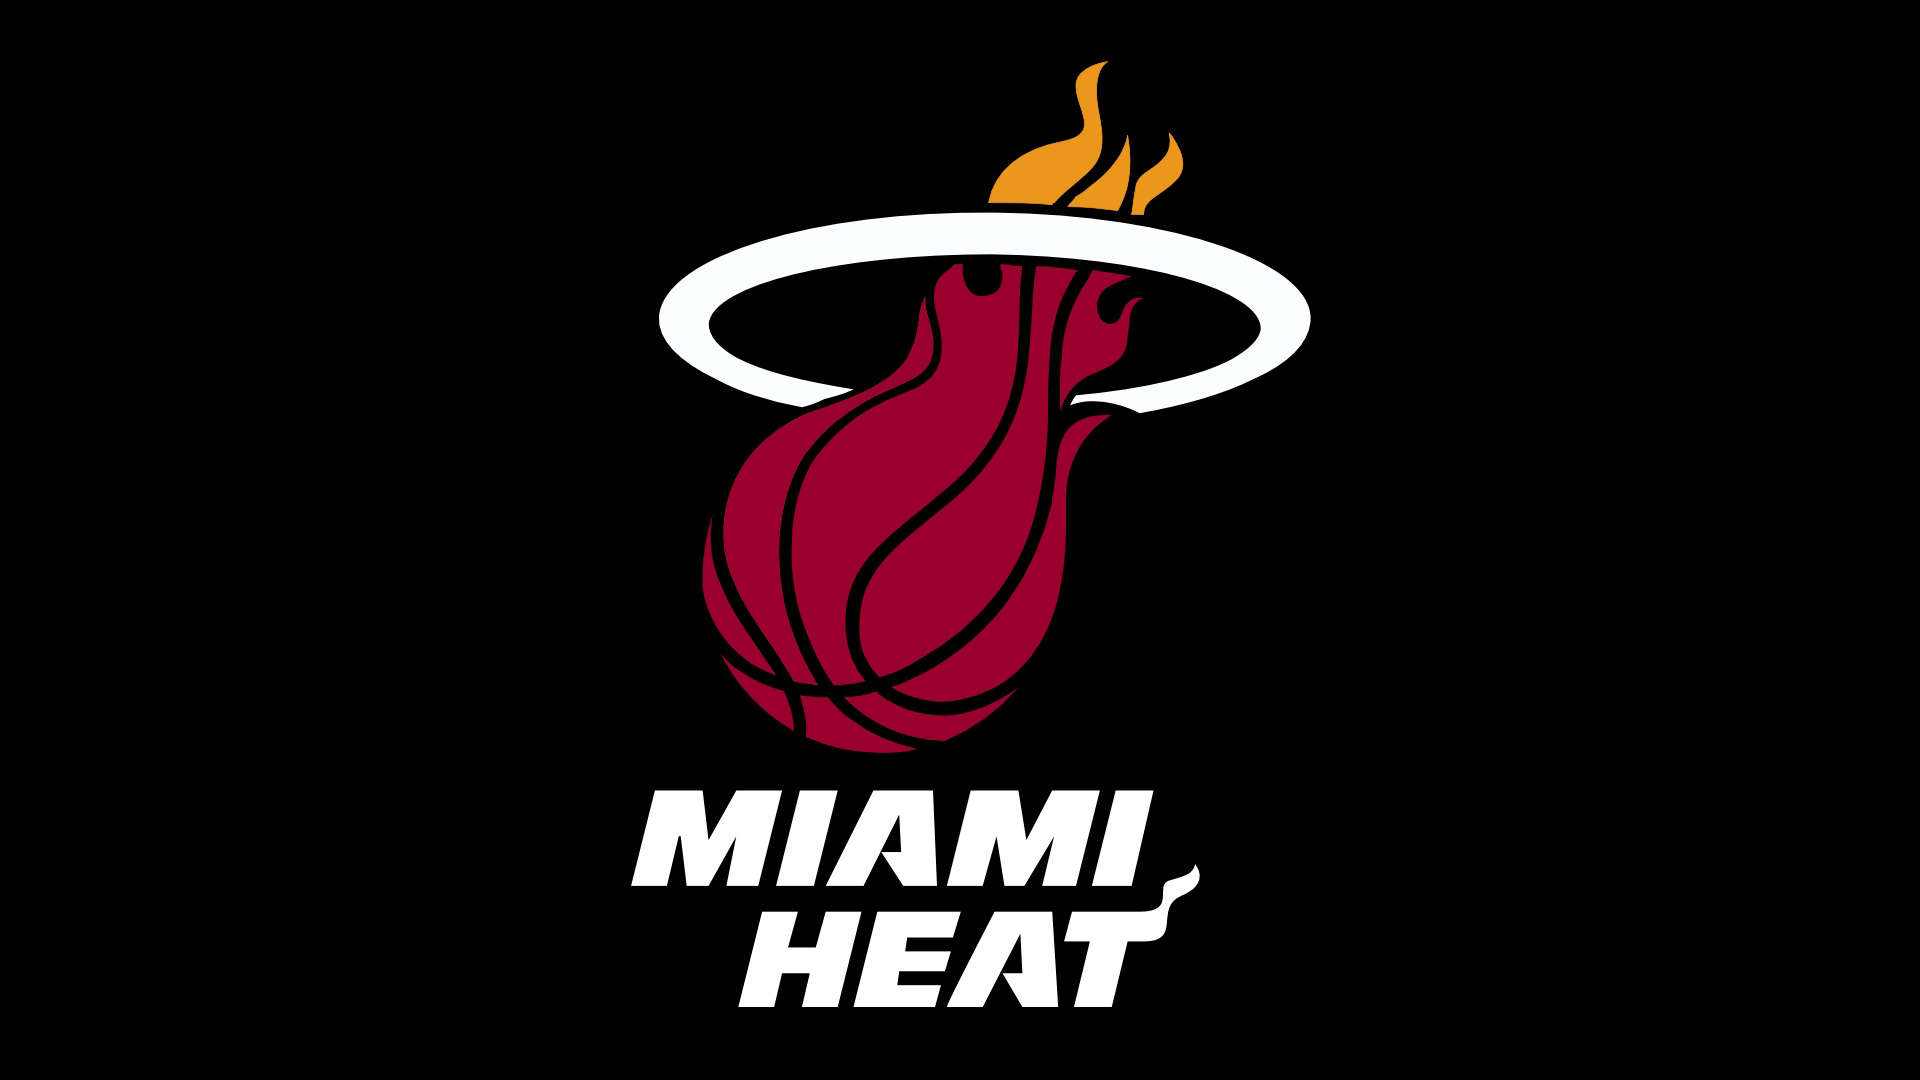 Miami Heat Logo Large Image